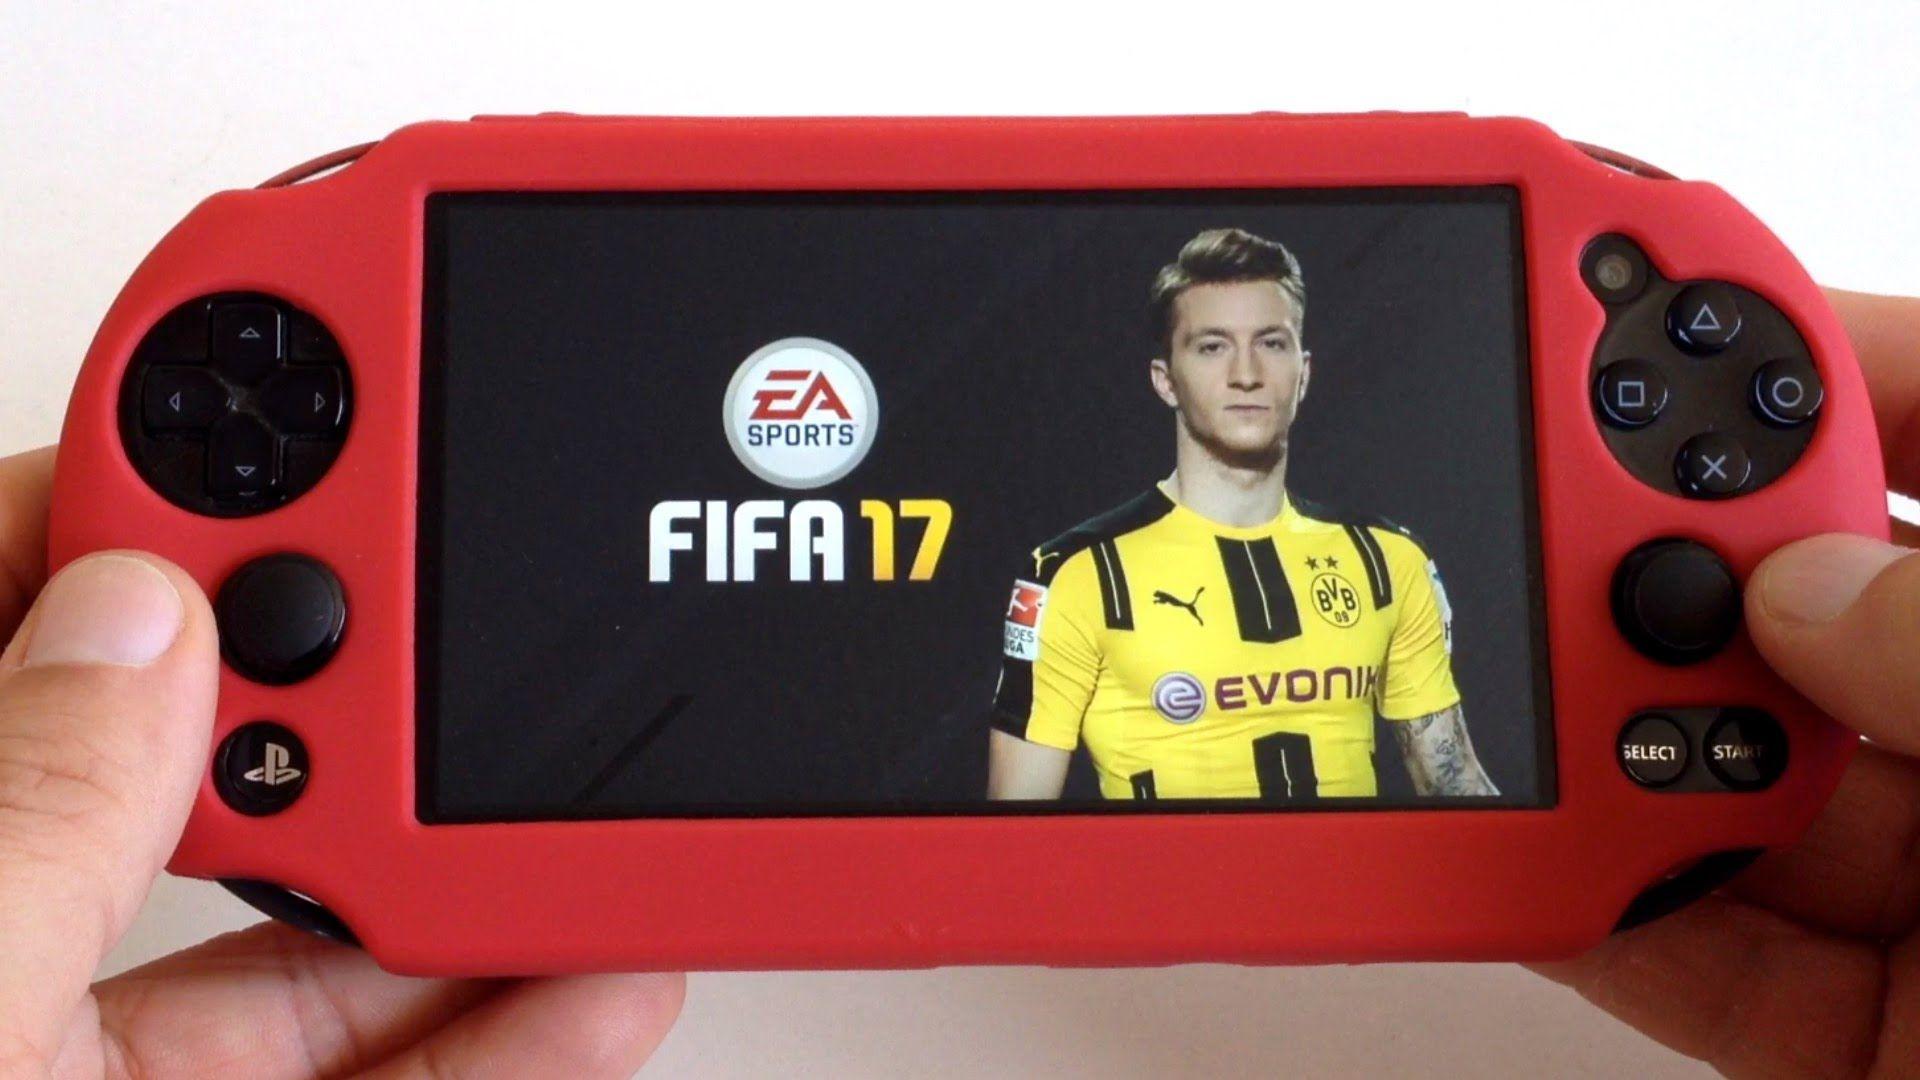 FIFA 17 PS Vita Remote Play Gameplay